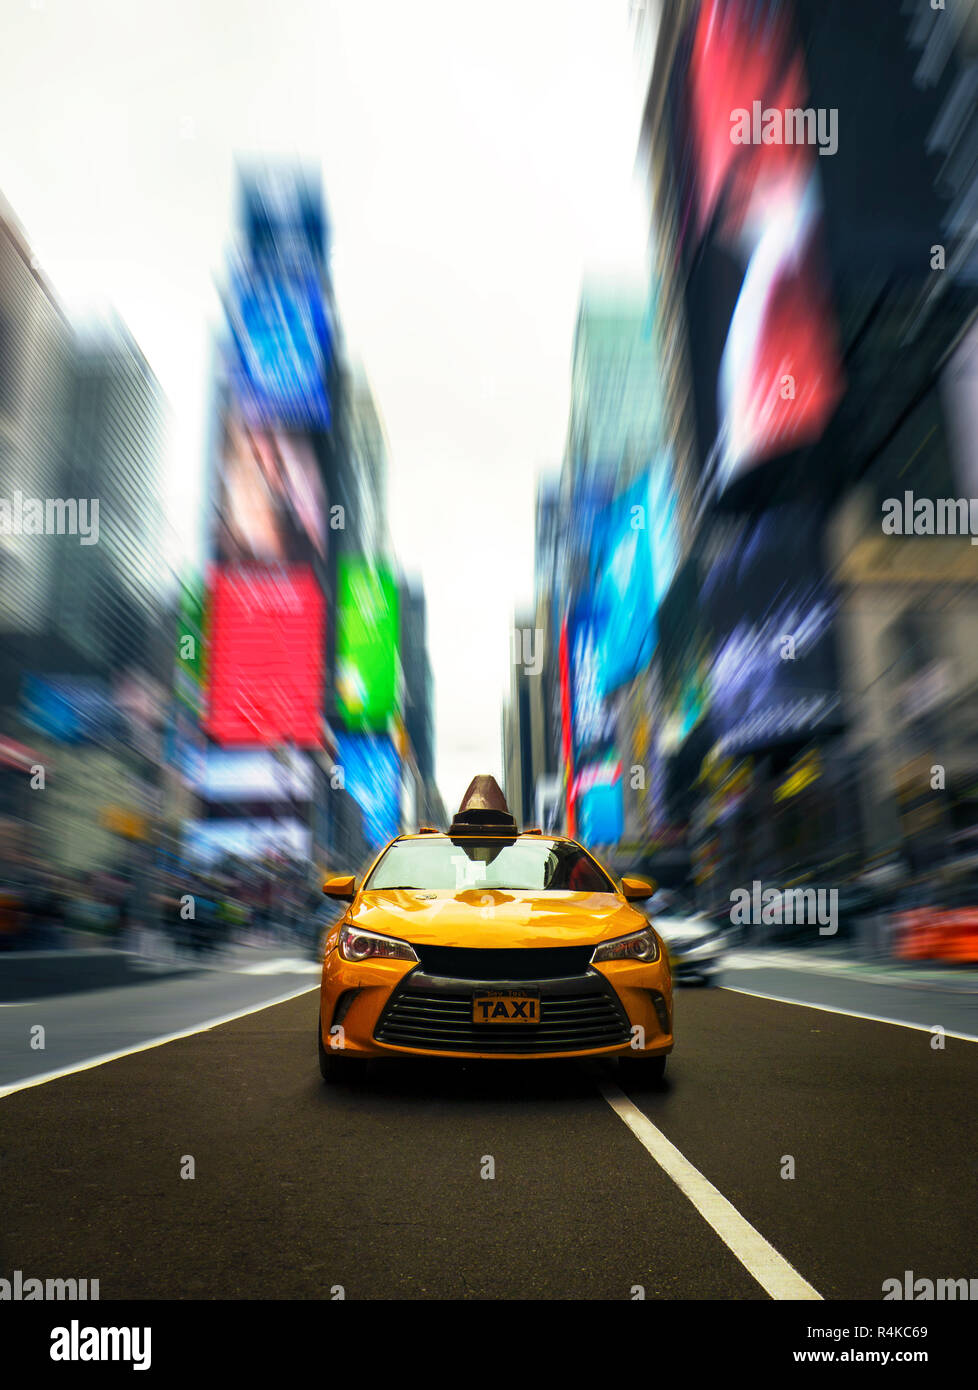 Unidades de taxi amarillo famoso por Times Square de Manhattan en Nueva York con espectacular efecto moderno Foto de stock